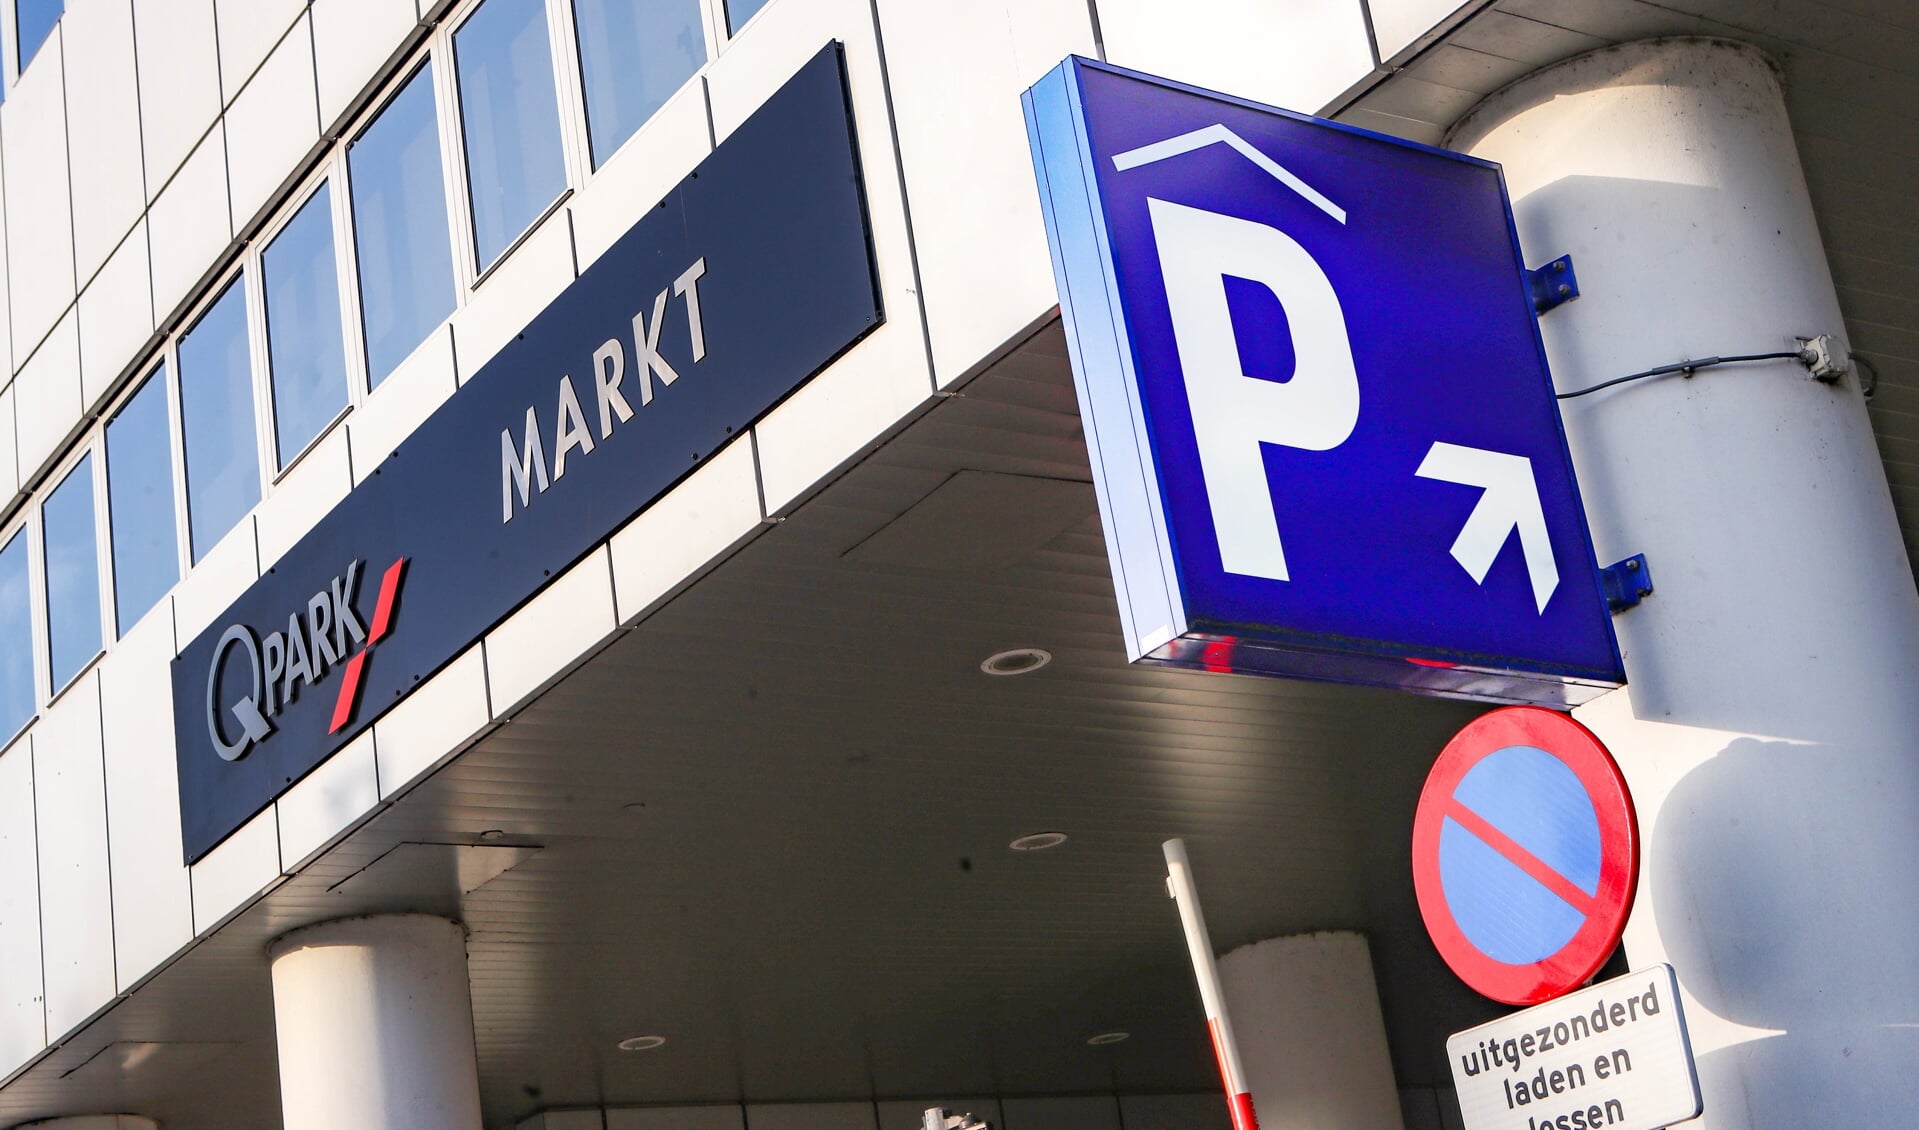 Markt is een van de parkeergarages die Q-Park beheert in het centrum.